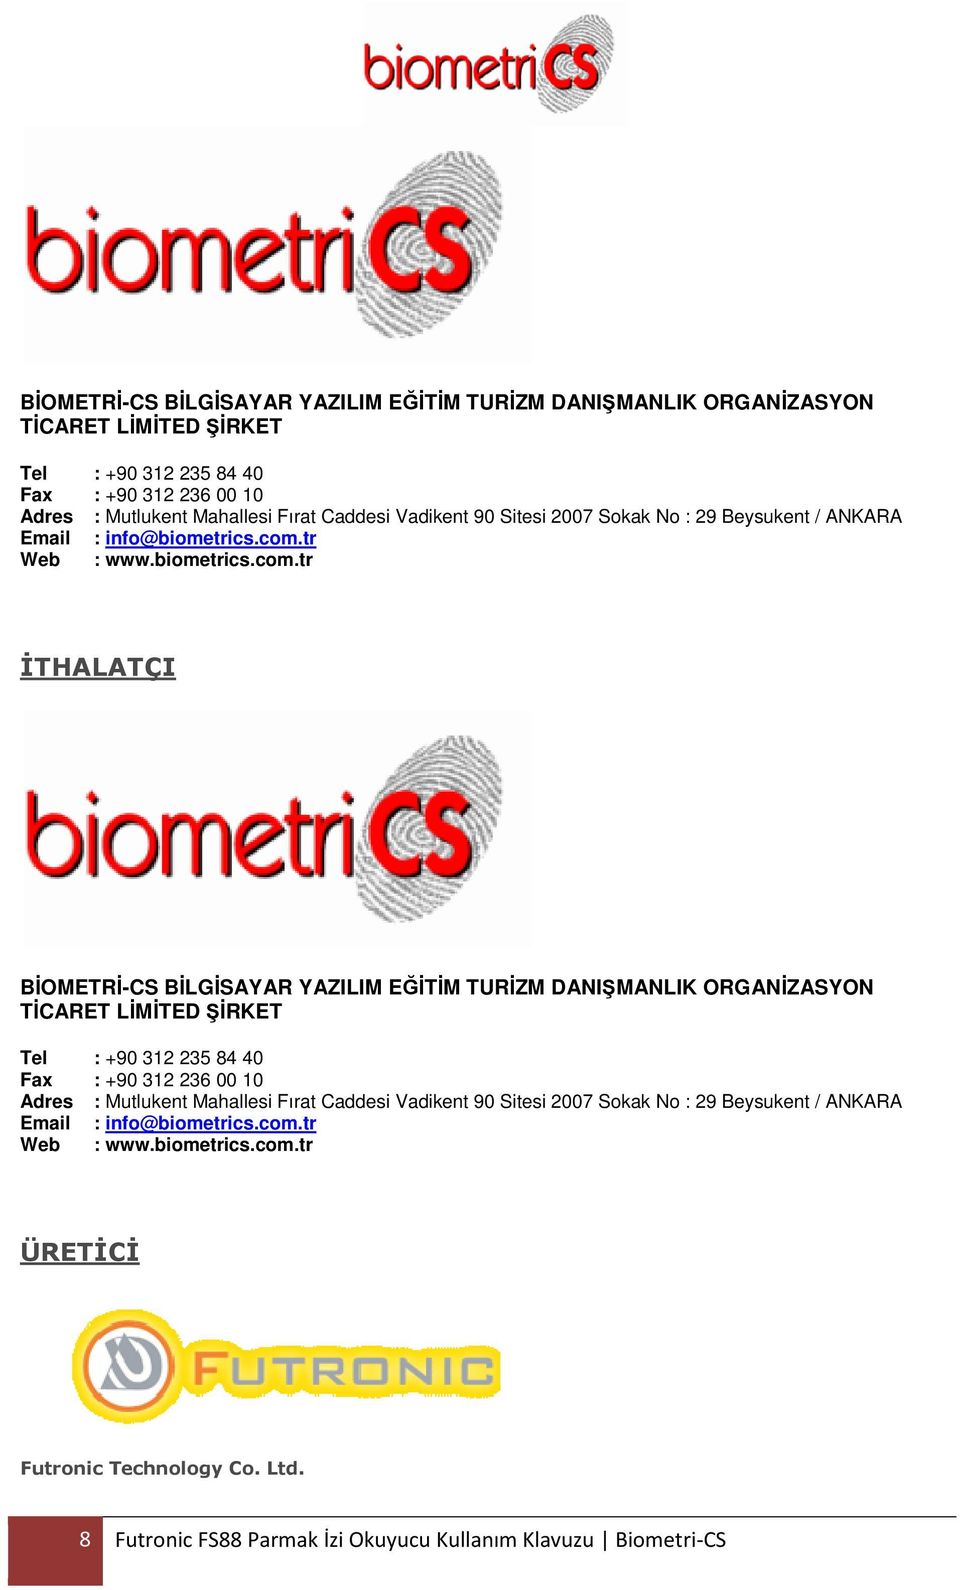 tr Web : www.biometrics.com.tr İTHALATÇI  tr Web : www.biometrics.com.tr ÜRETİCİ Futronic Technology Co. Ltd. 8 Futronic FS88 Parmak İzi Okuyucu Kullanım Klavuzu Biometri-CS